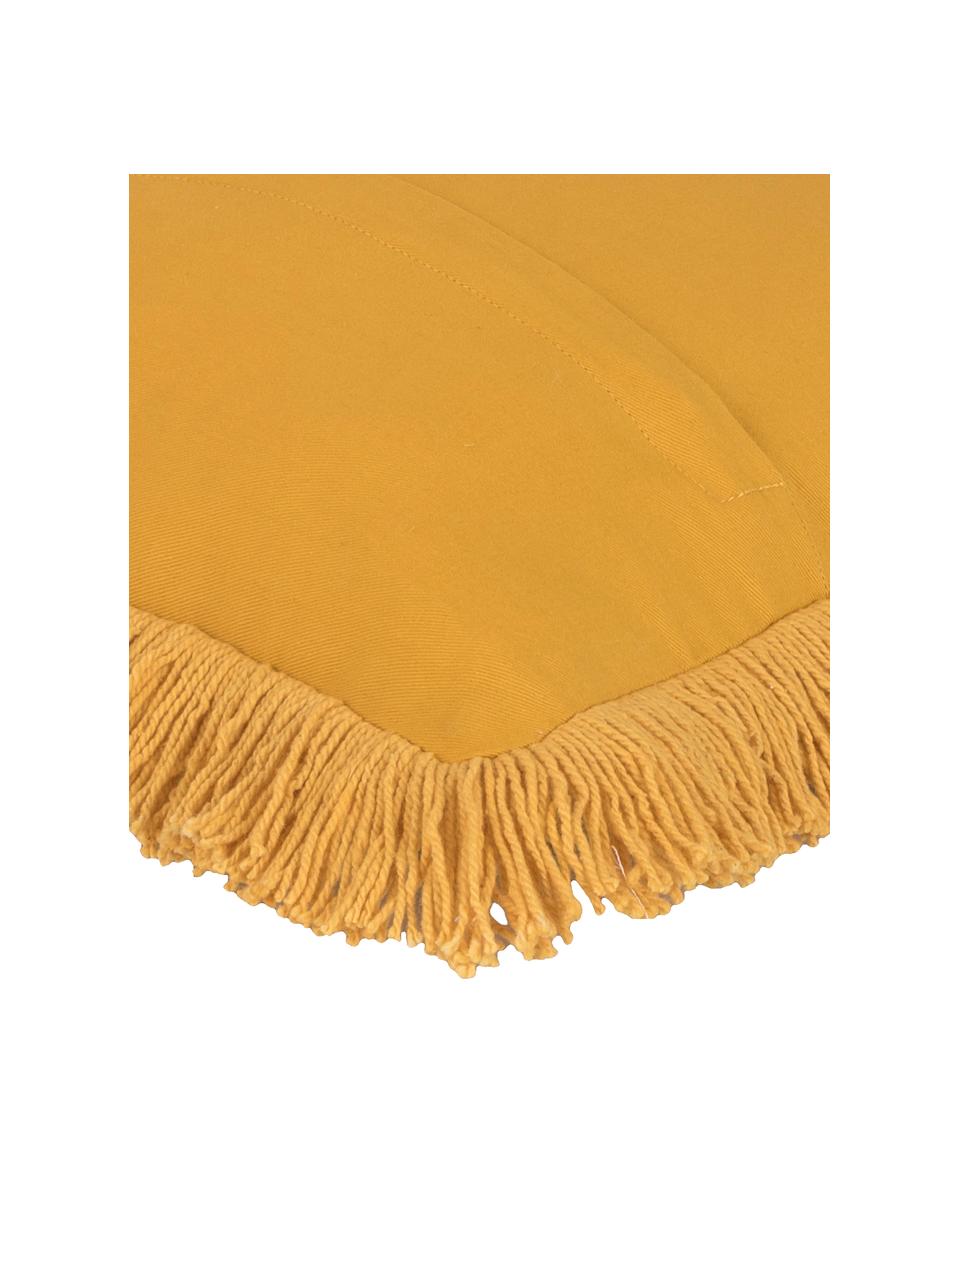 Housse de coussin en velours jaune à franges Phoeby, Coton, Jaune, larg. 40 x long. 40 cm